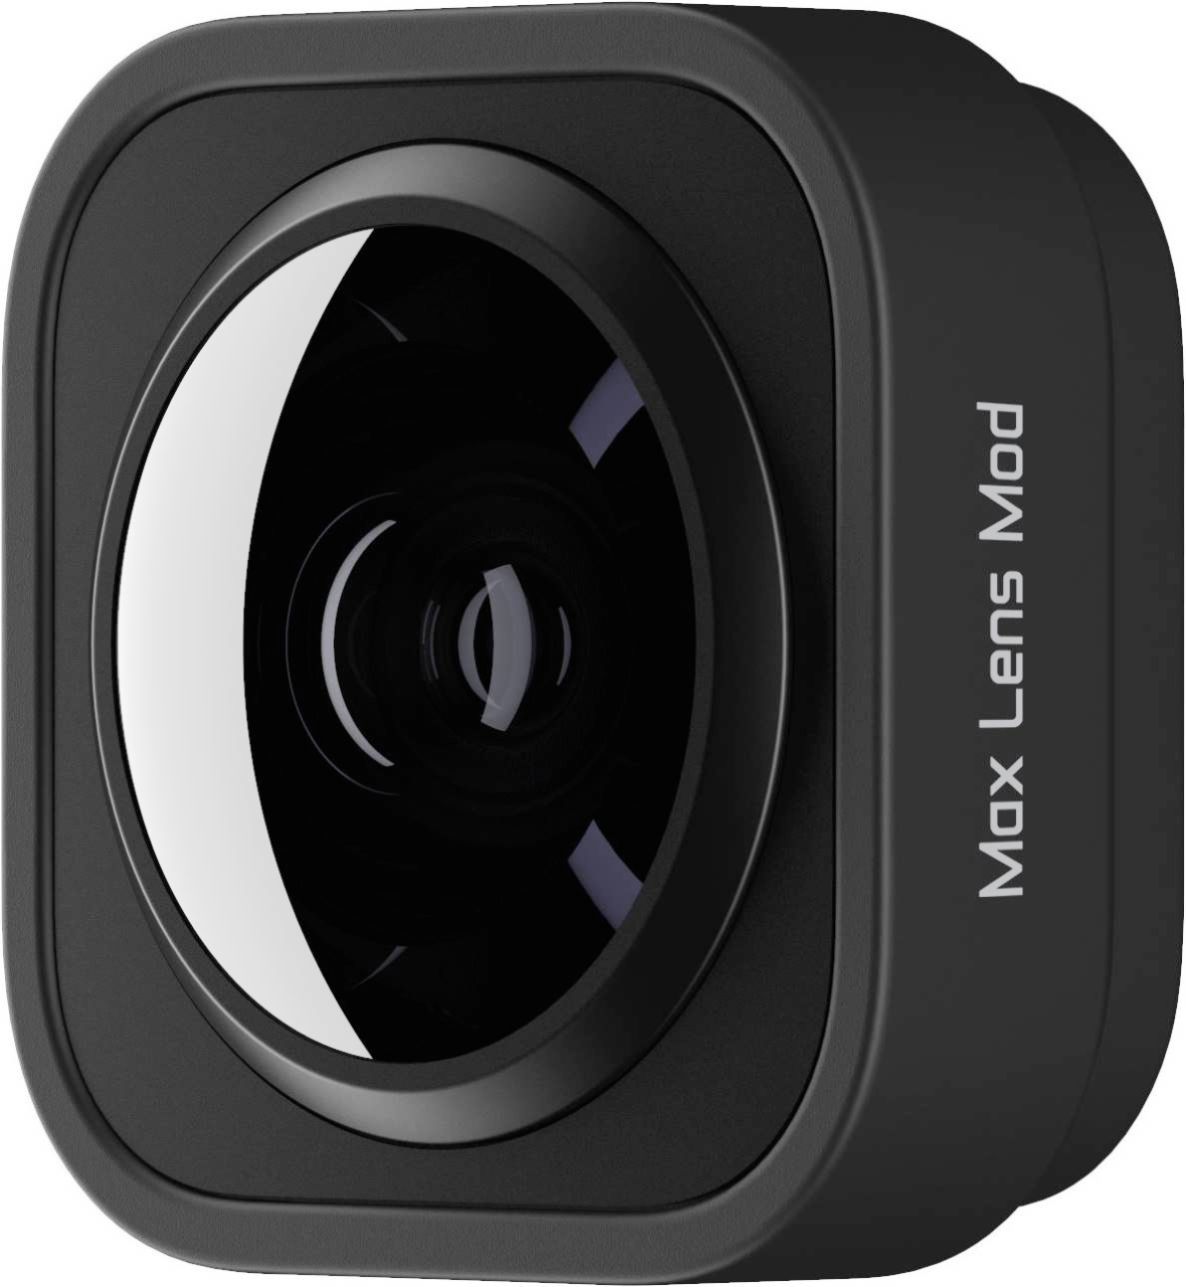 - (HERO11 Black ADWAL-001 Black/HERO10 Best GoPro Buy Max Black/HERO9 Mod Black) Lens